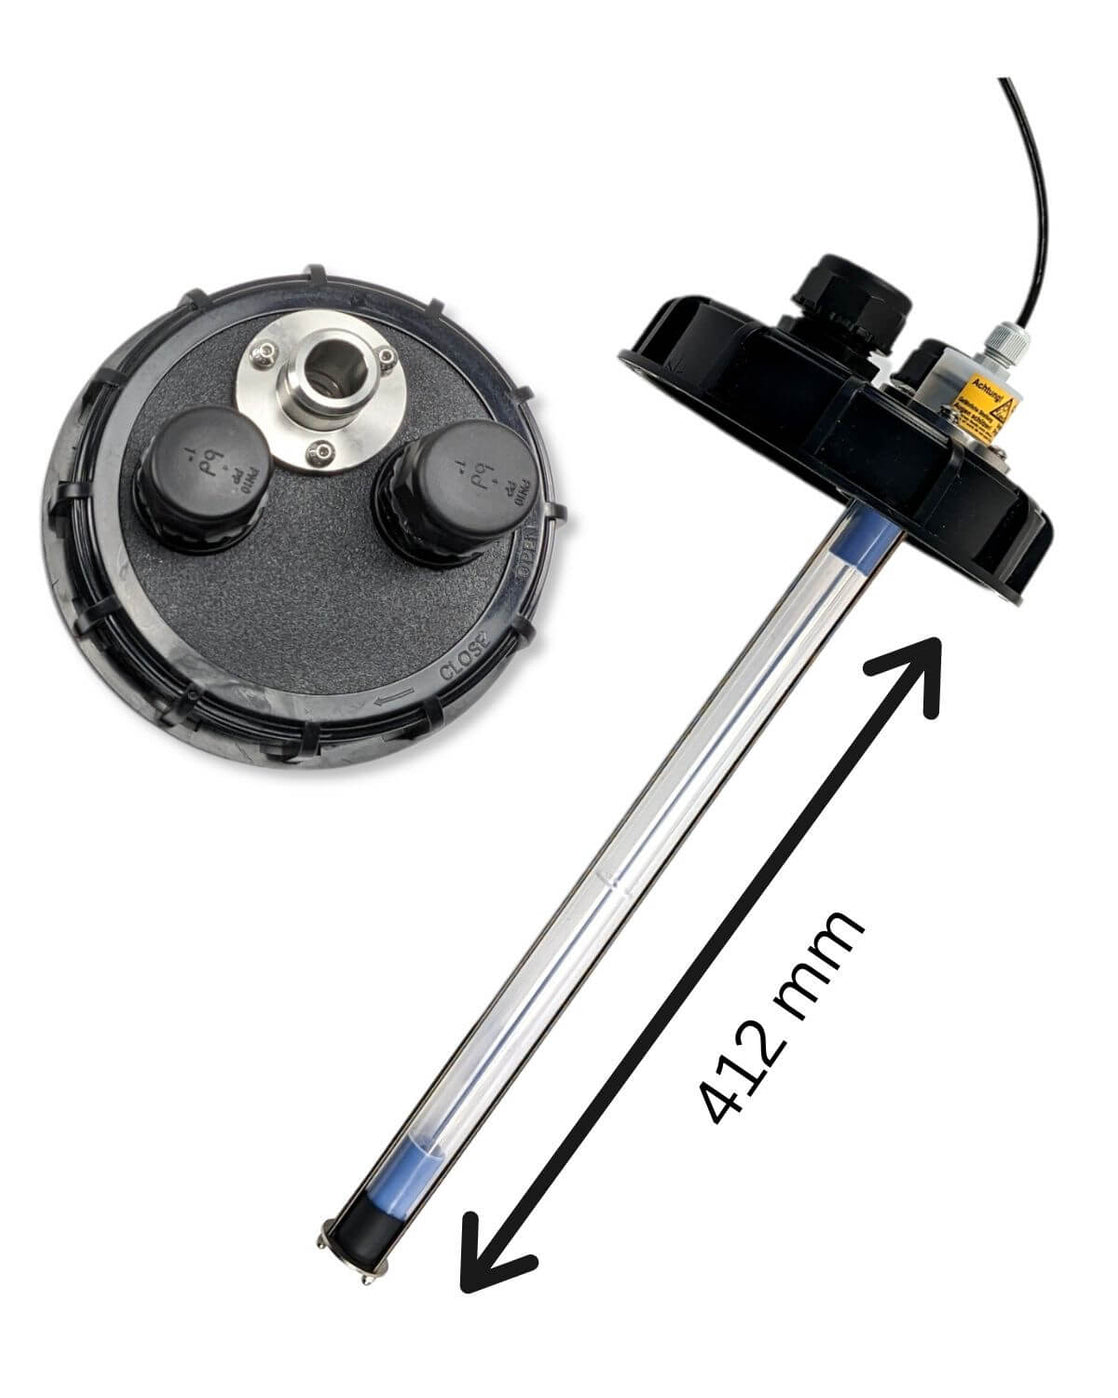 Ein Bild eines Motors und einer Pumpe, die die Komponenten des PURION IBC DN150 17W SPL BS OTC 12 V/24 V-Durchflusssystems der UV Concept GmbH zeigt.